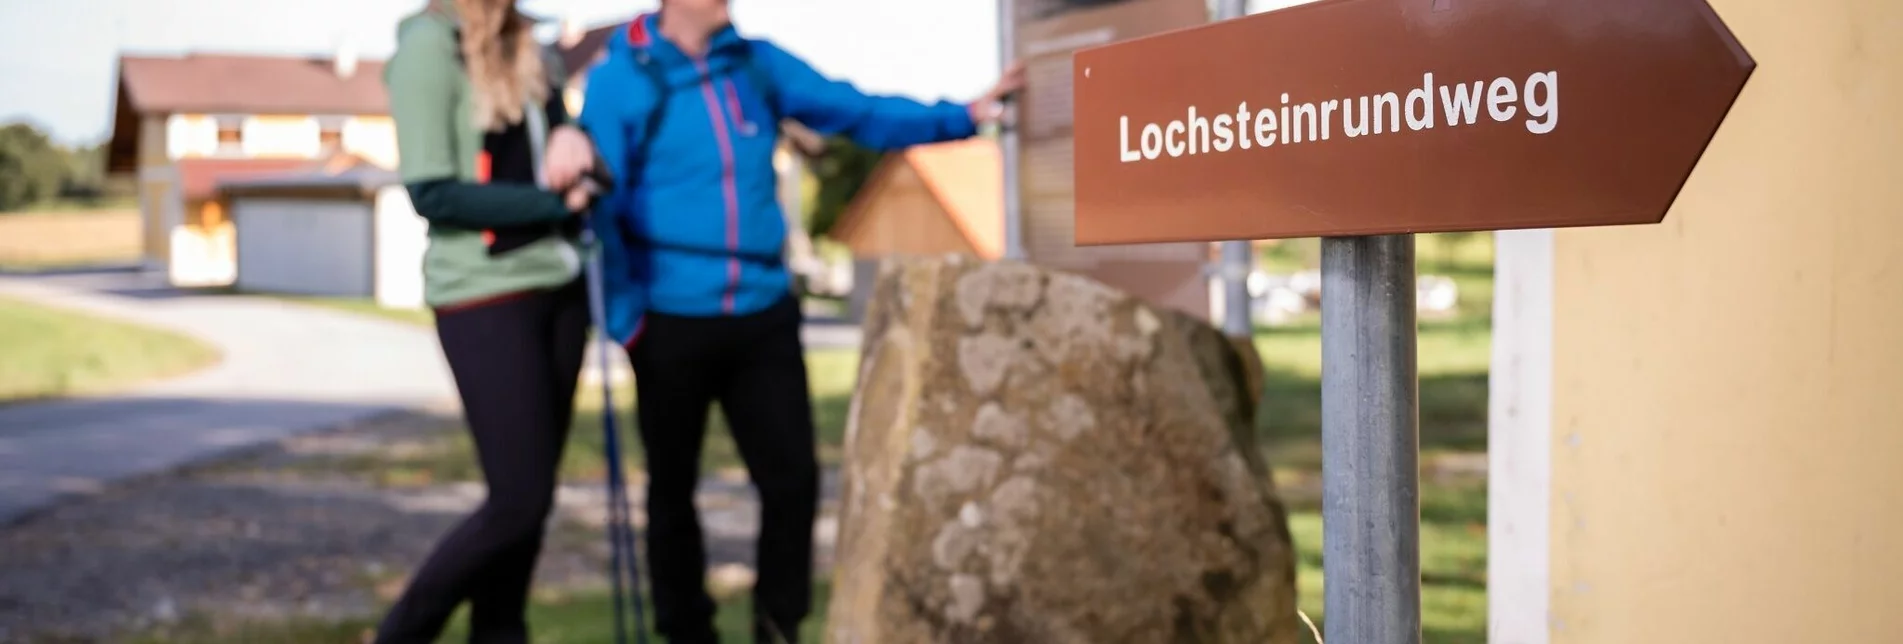 Themen- und Lehrpfad Lochsteinrundweg, Vorau - Touren-Impression #1 | © Tourismusverband Oststeiermark